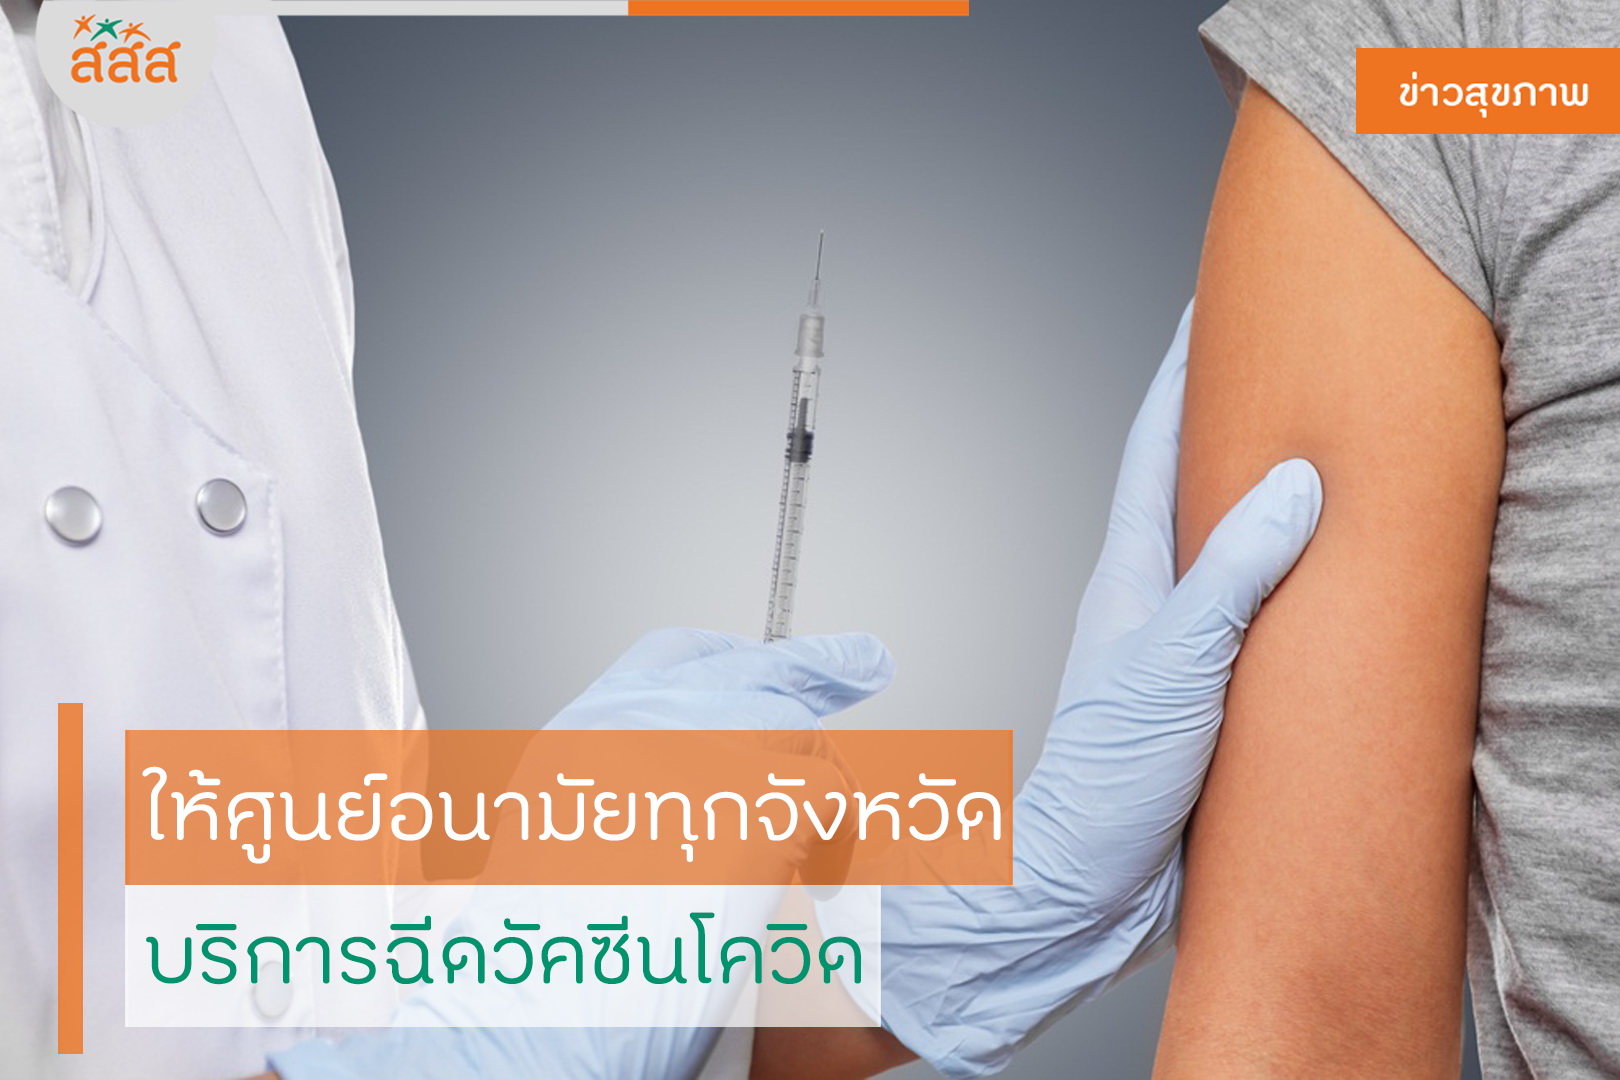 ให้ศูนย์อนามัยทุกจังหวัด บริการฉีดวัคซีนโควิด thaihealth